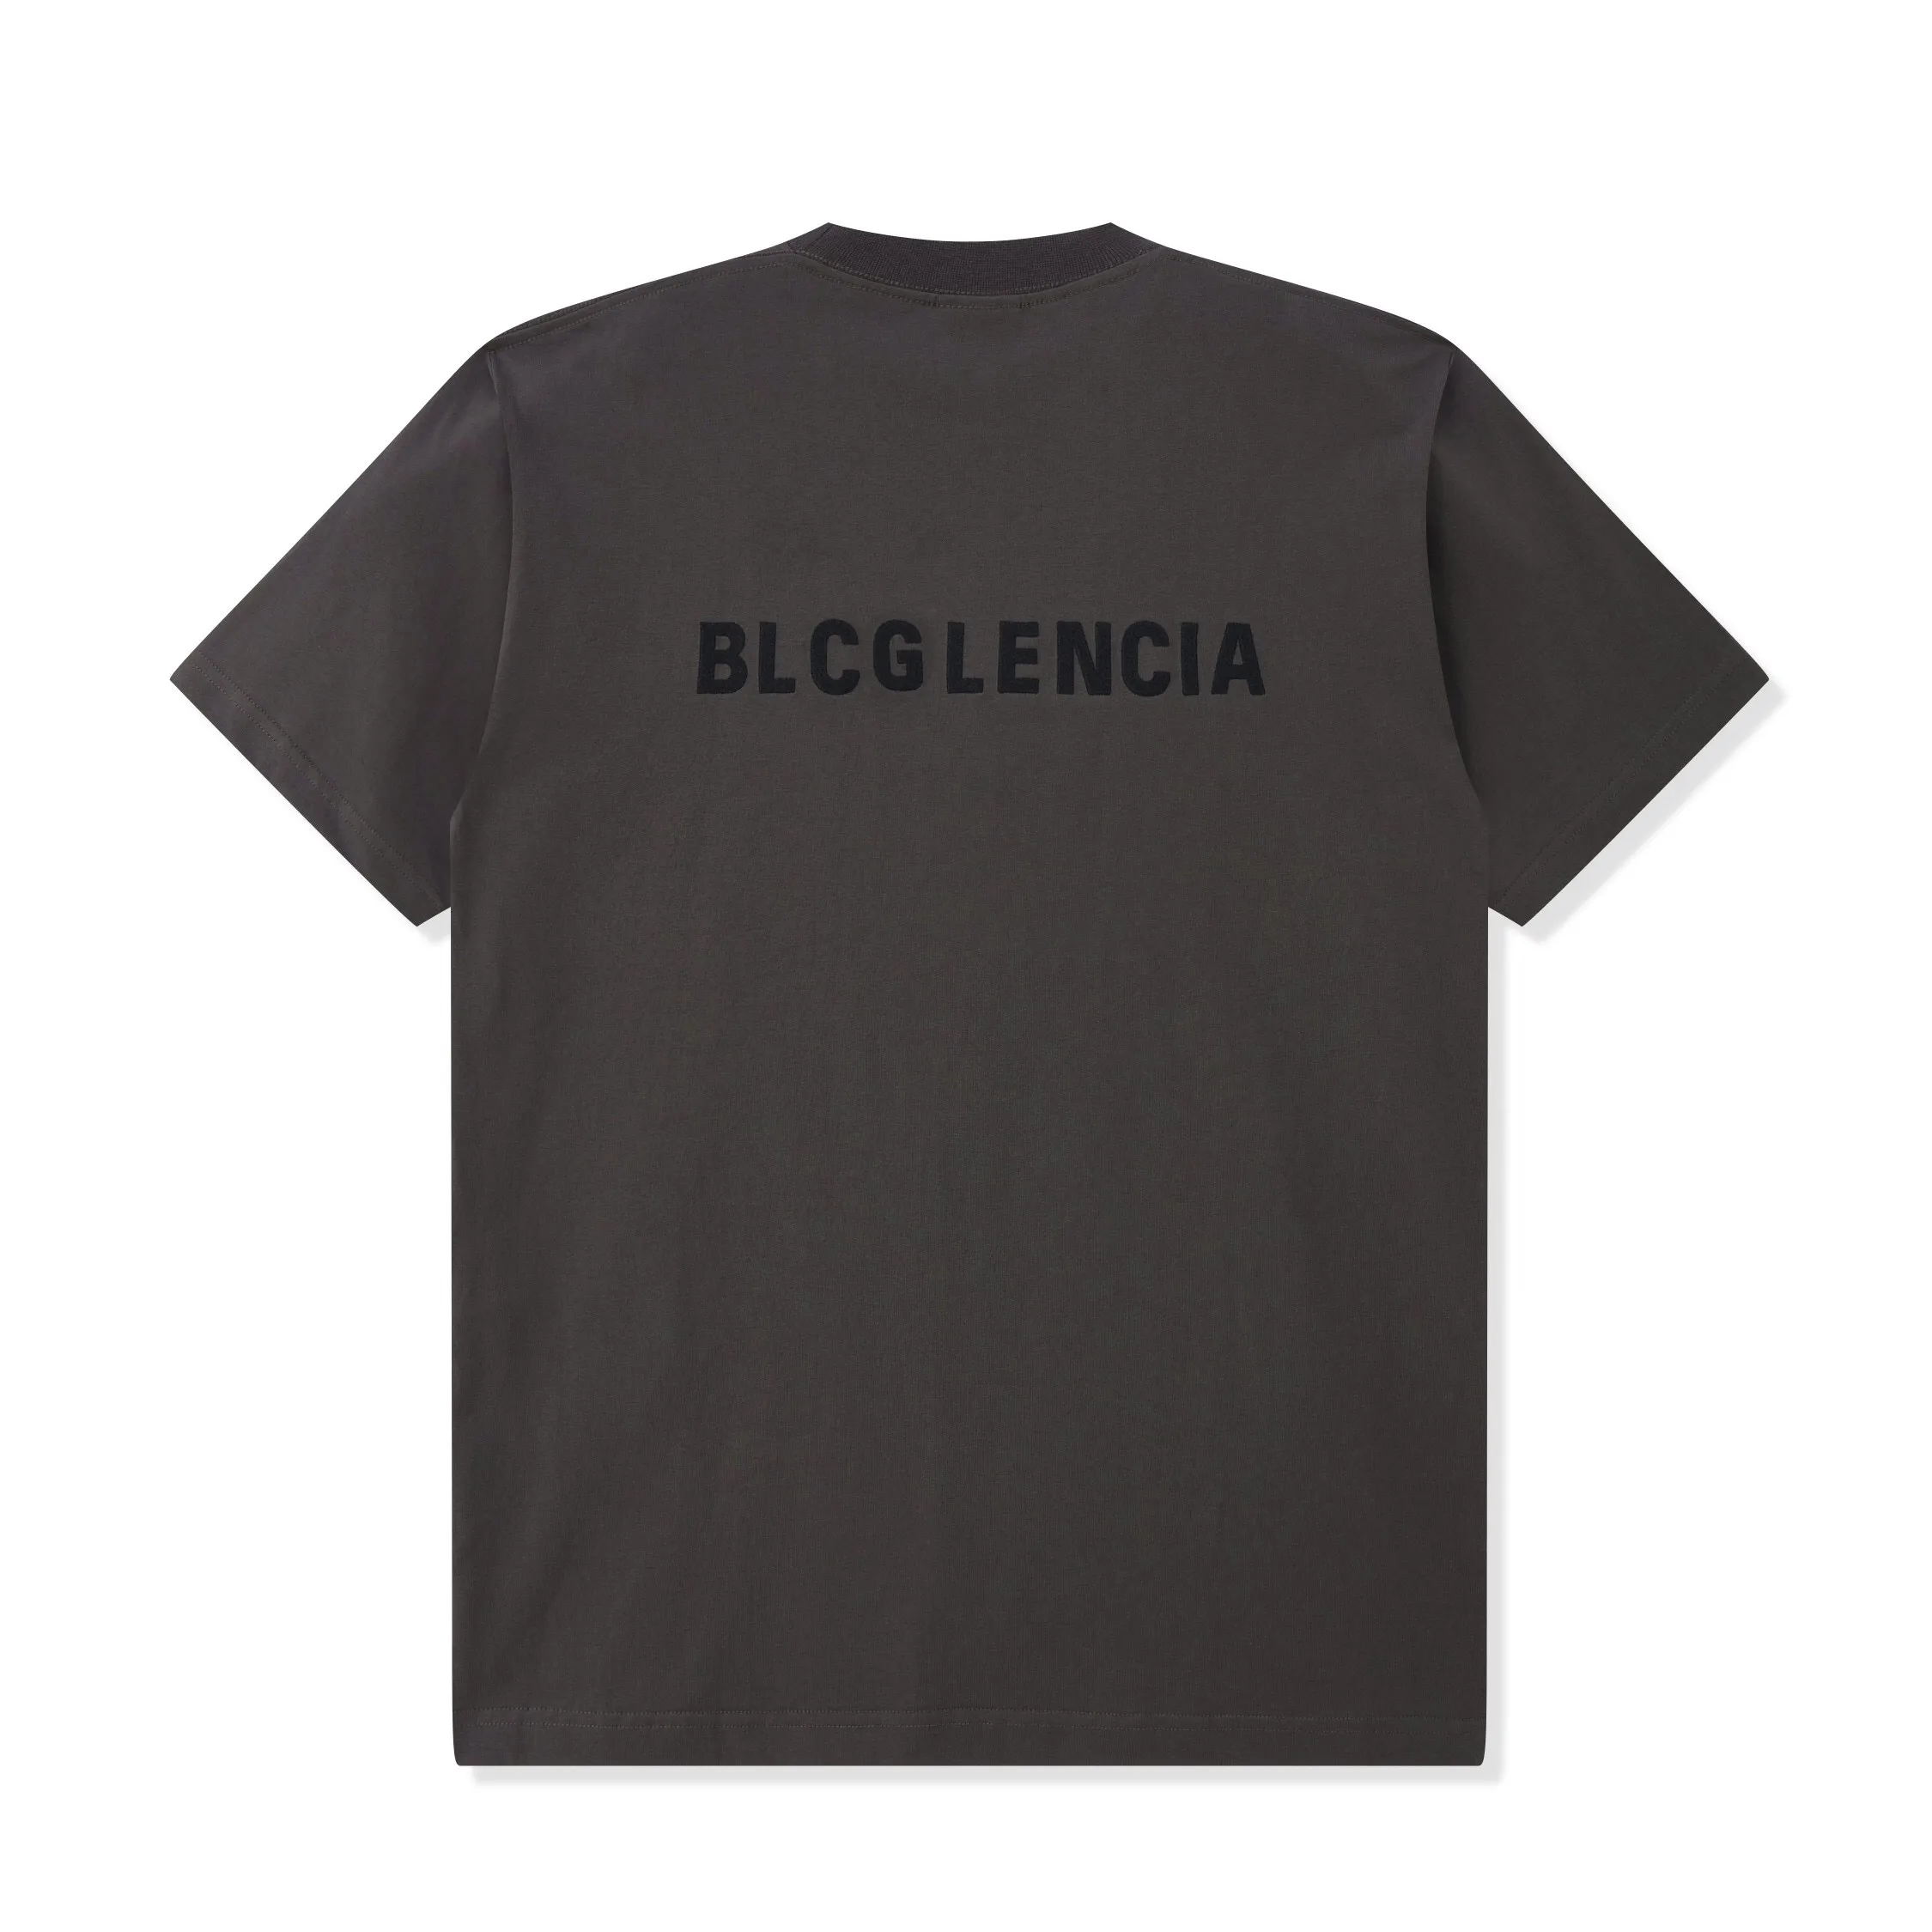 Blcg Lencia unisex Summer T-shirts damskie wadzka ciężka 100% bawełniana tkanina potrójne wykonanie wykonania plus rozmiar TESS SM130213